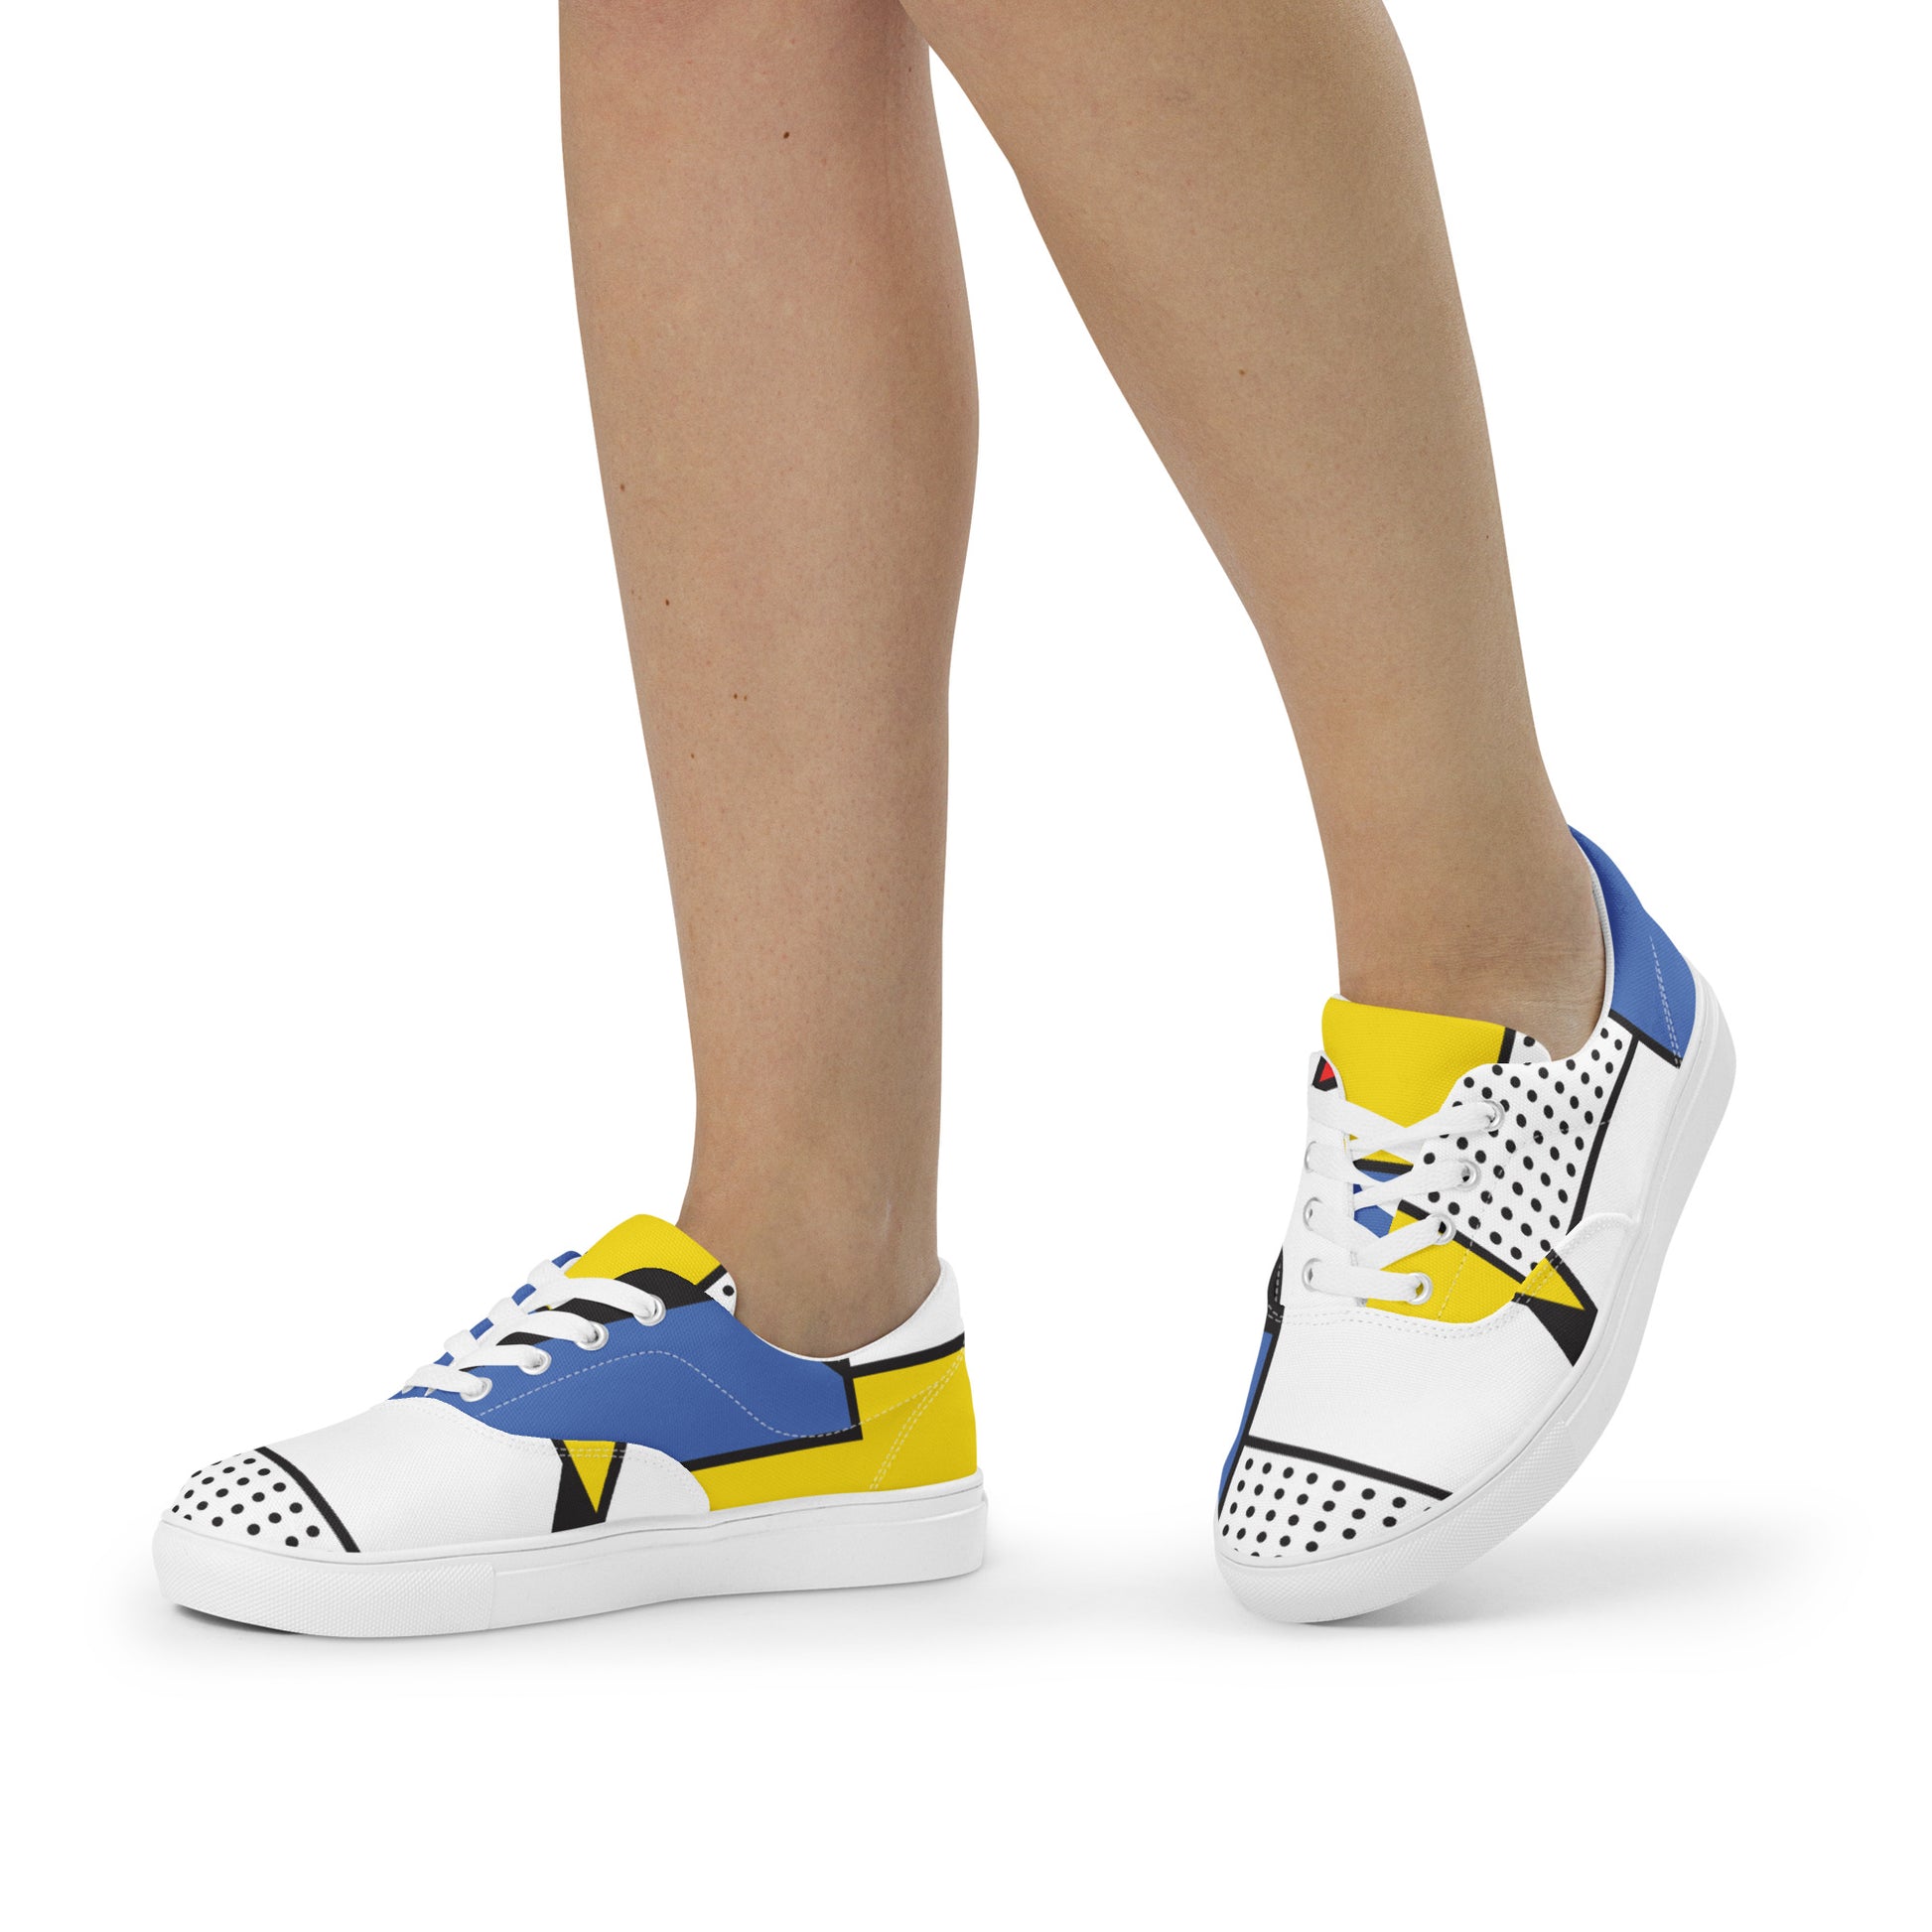 Piet Mondrian shoes